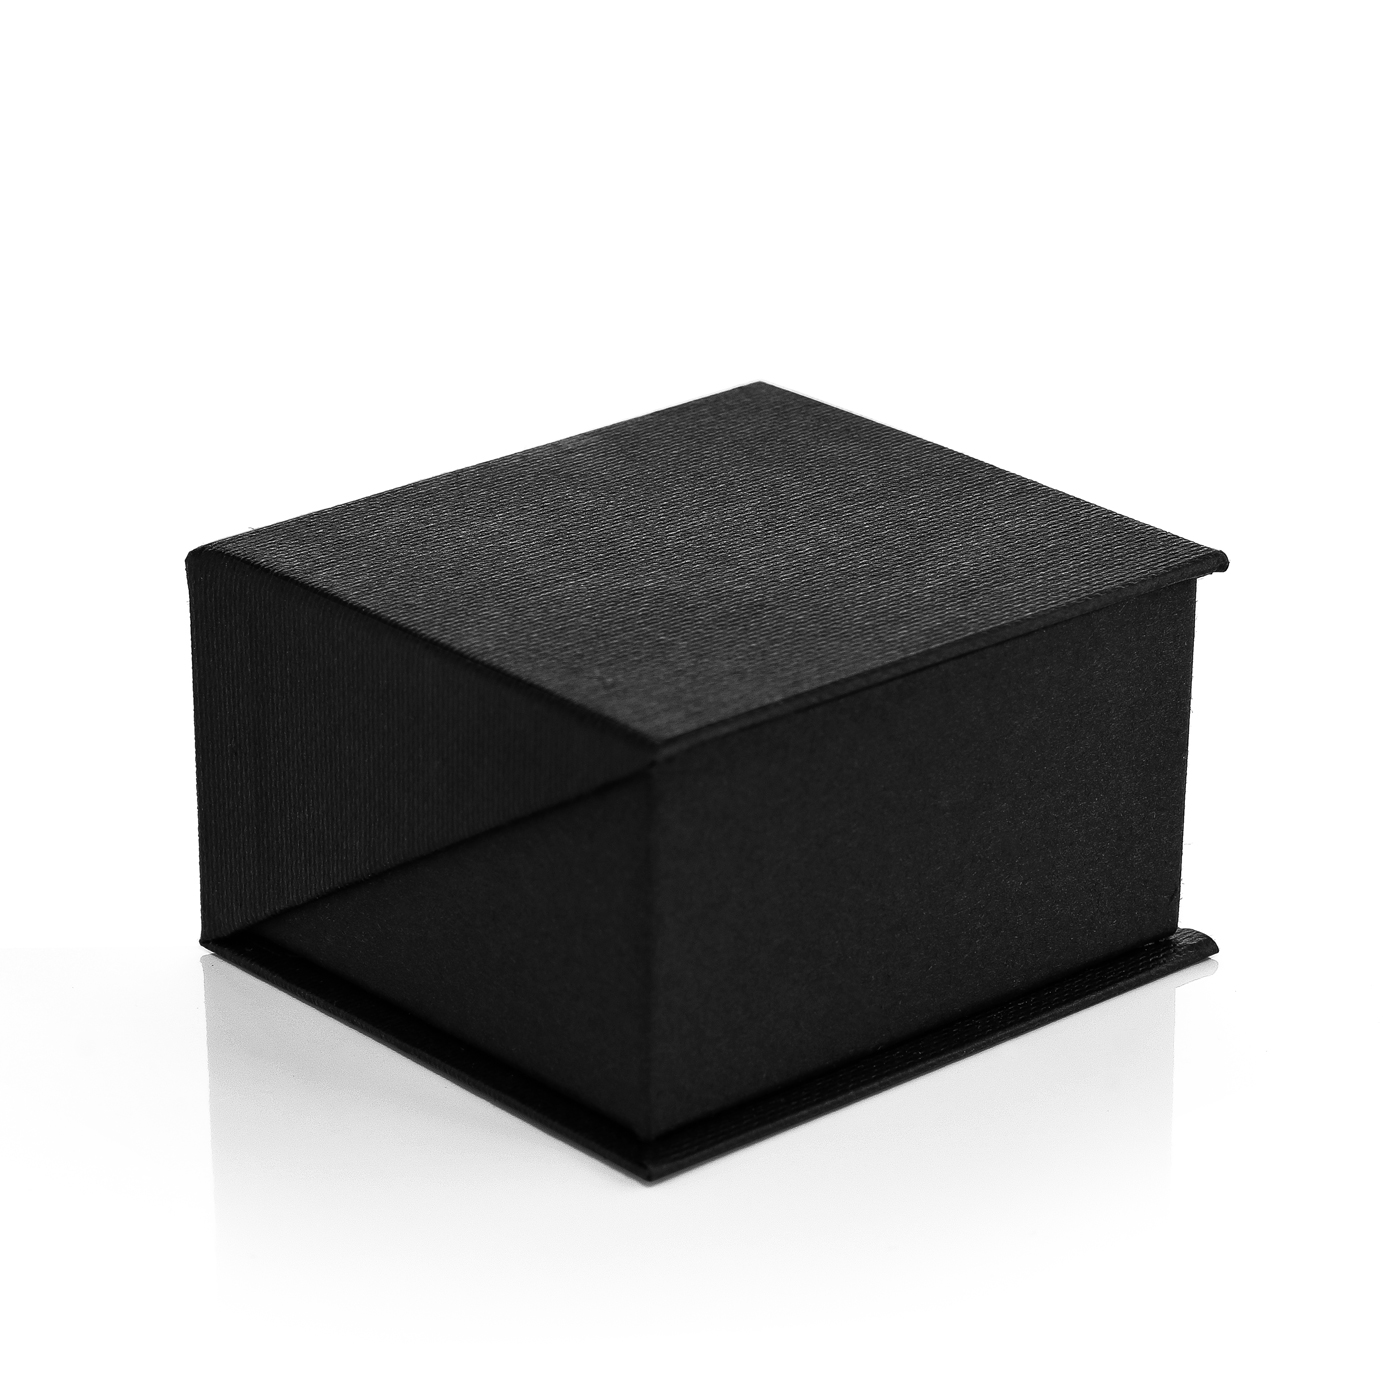 Neu KLAPPETUI Box RINGBOX Etui RINGETUI Geschenkbox für Ringe in Schwarz/weiß 